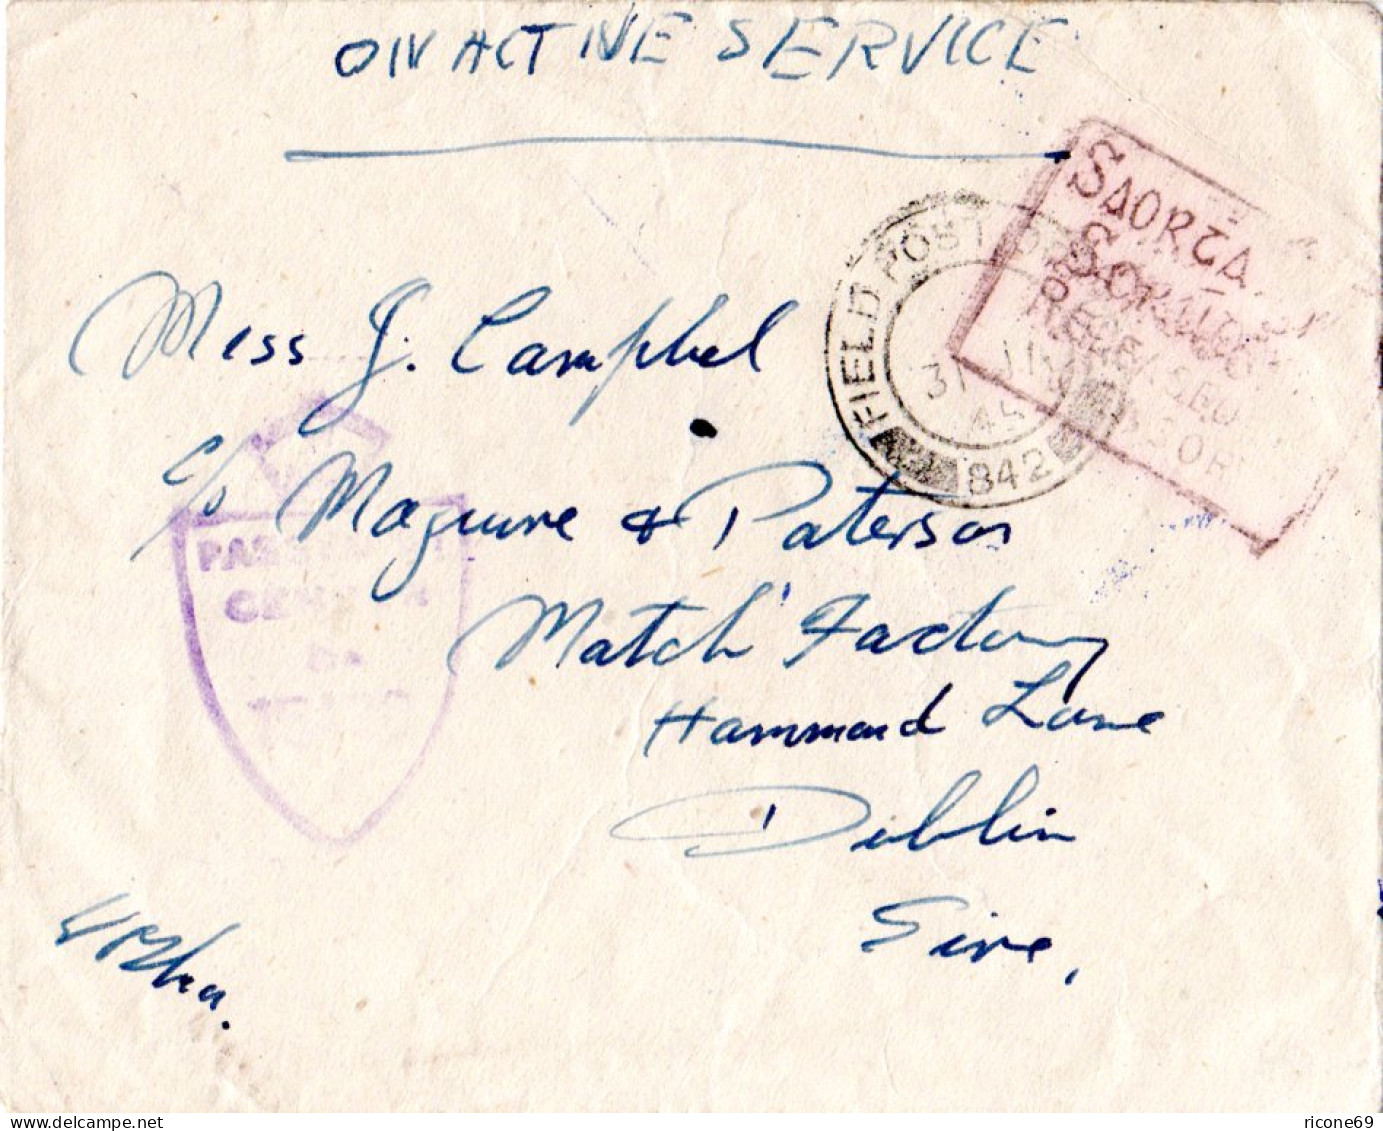 Irland 1944, FPO 842, Feldpost Brief M. Irischer Zensur Released By Censor - Lettres & Documents